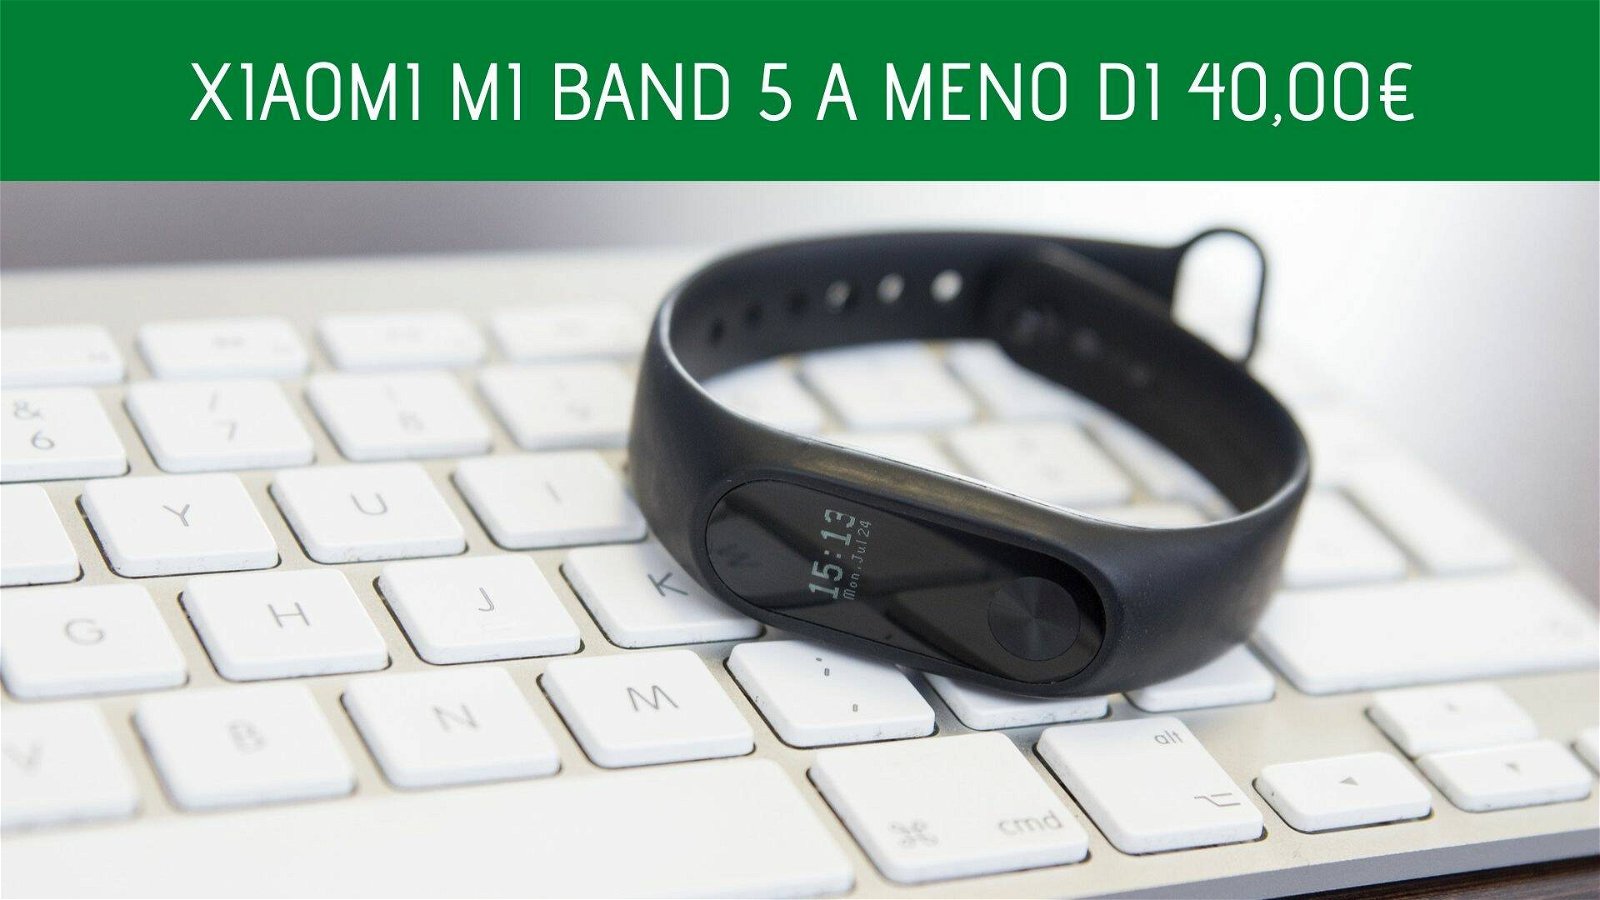 Immagine di Offerte del giorno eBay: Xiaomi Mi Band 5 a meno di 40 euro!